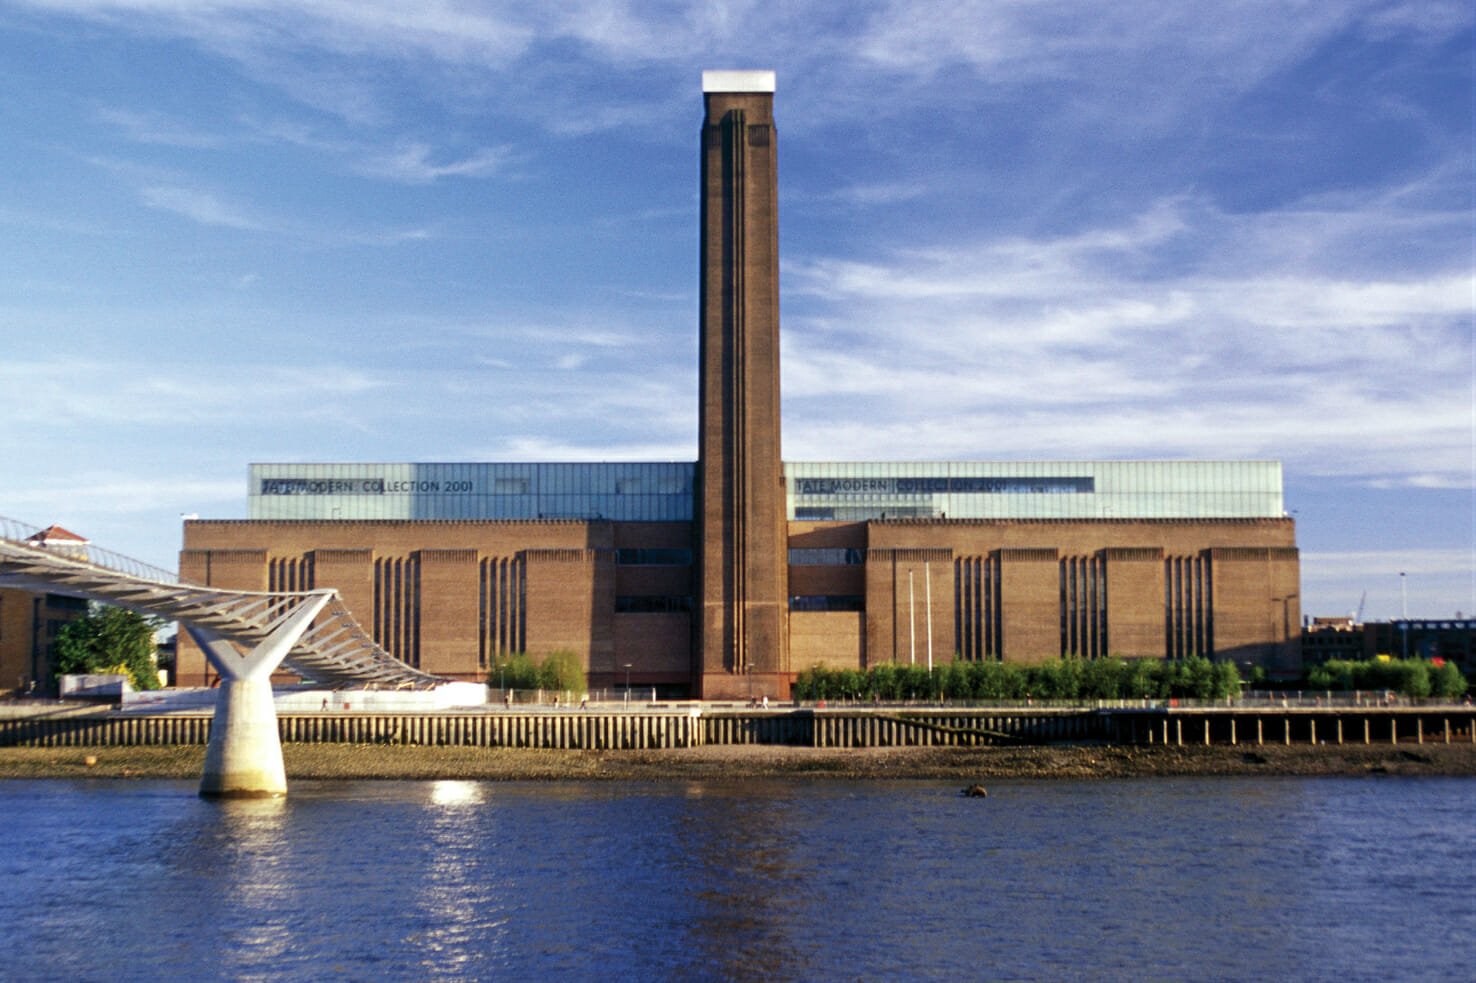 Tate Modern London museums